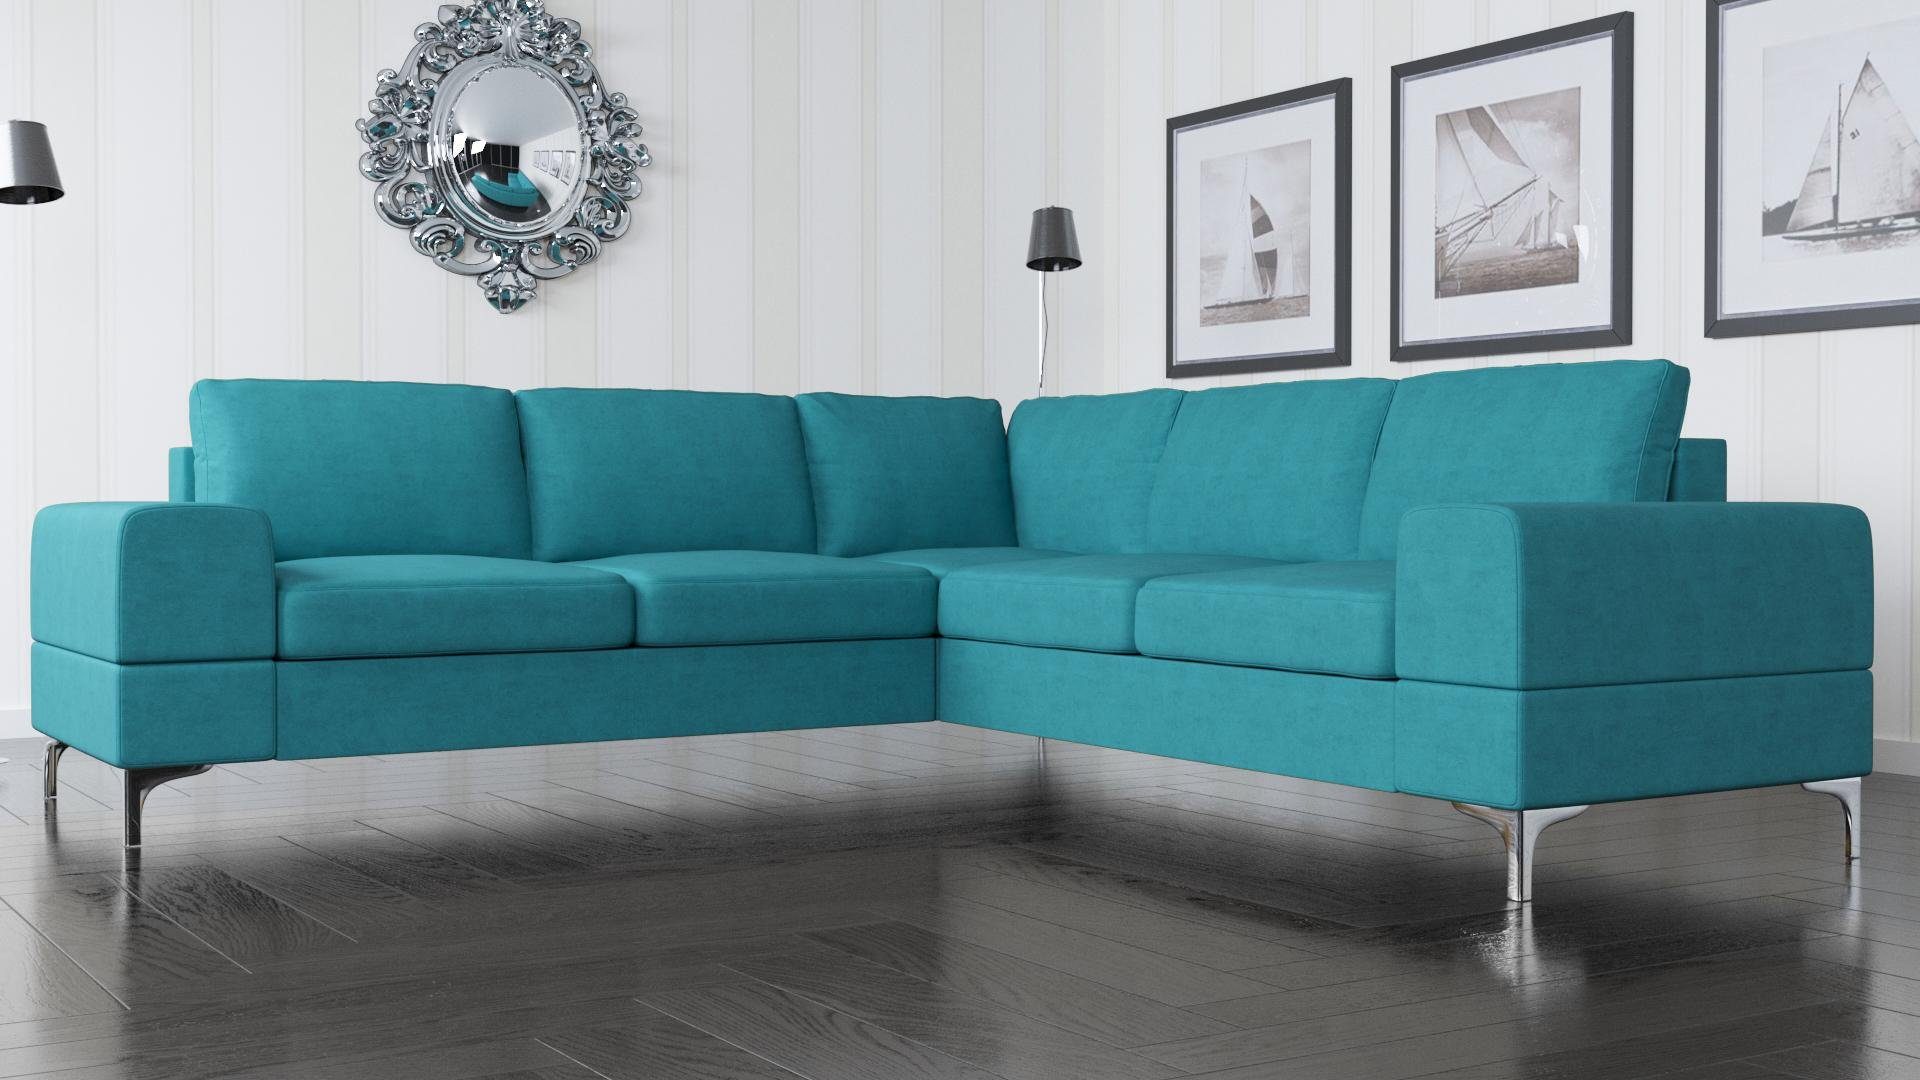 JVmoebel Ecksofa, Couch Ecksofa Textil Wohnzimmer Design Modern L-Form Türkis Möbel Blau